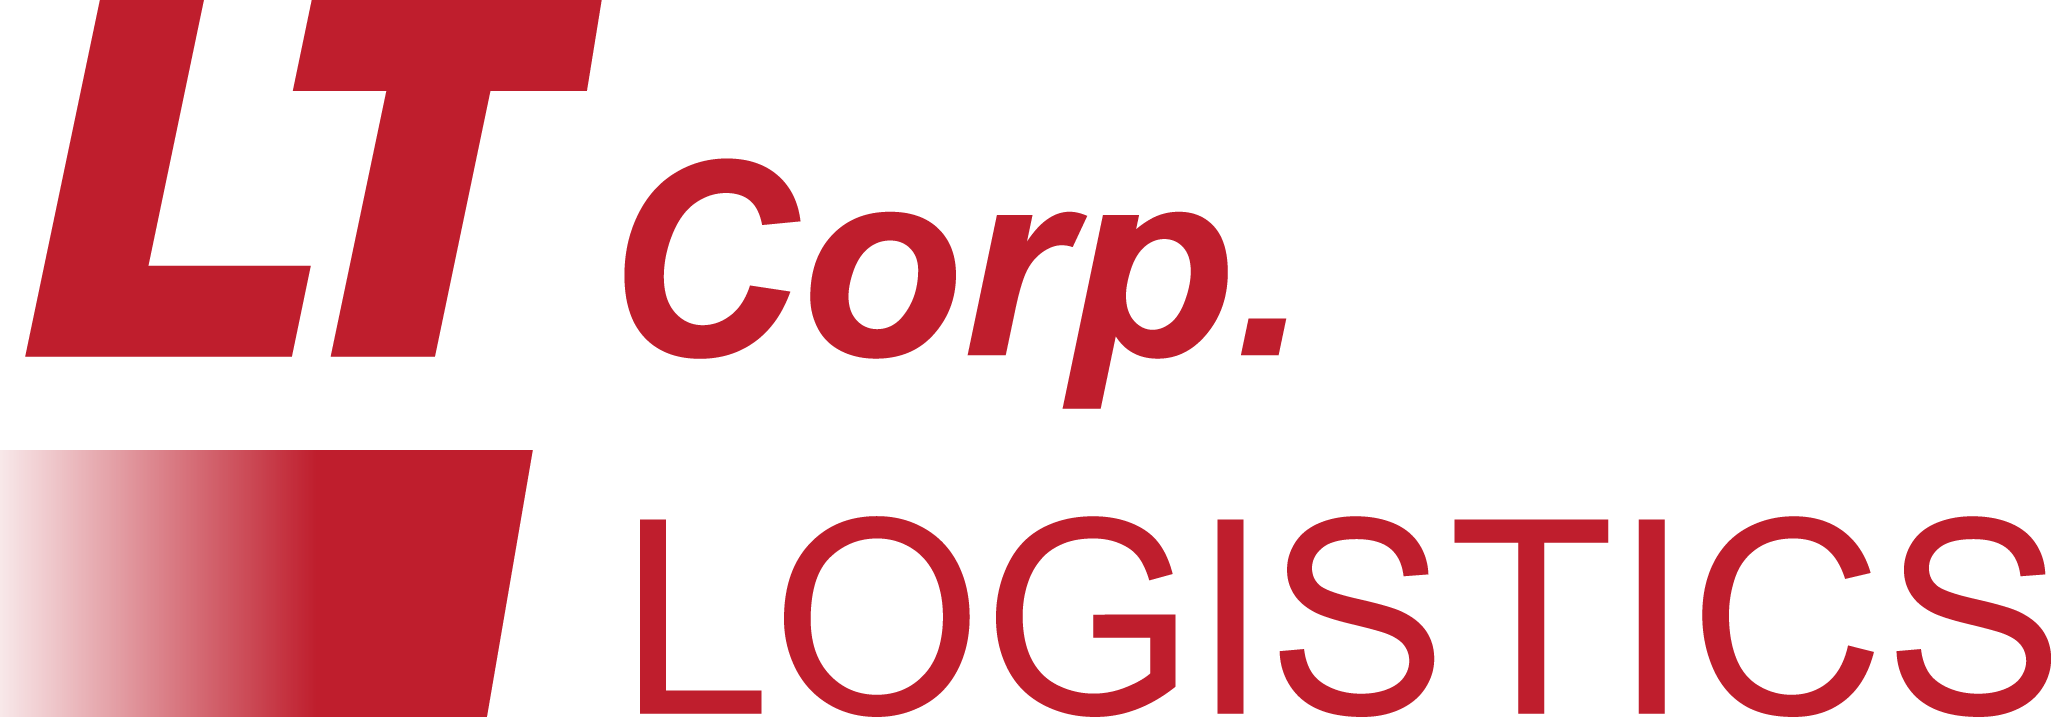 LT Corp Logistics logo